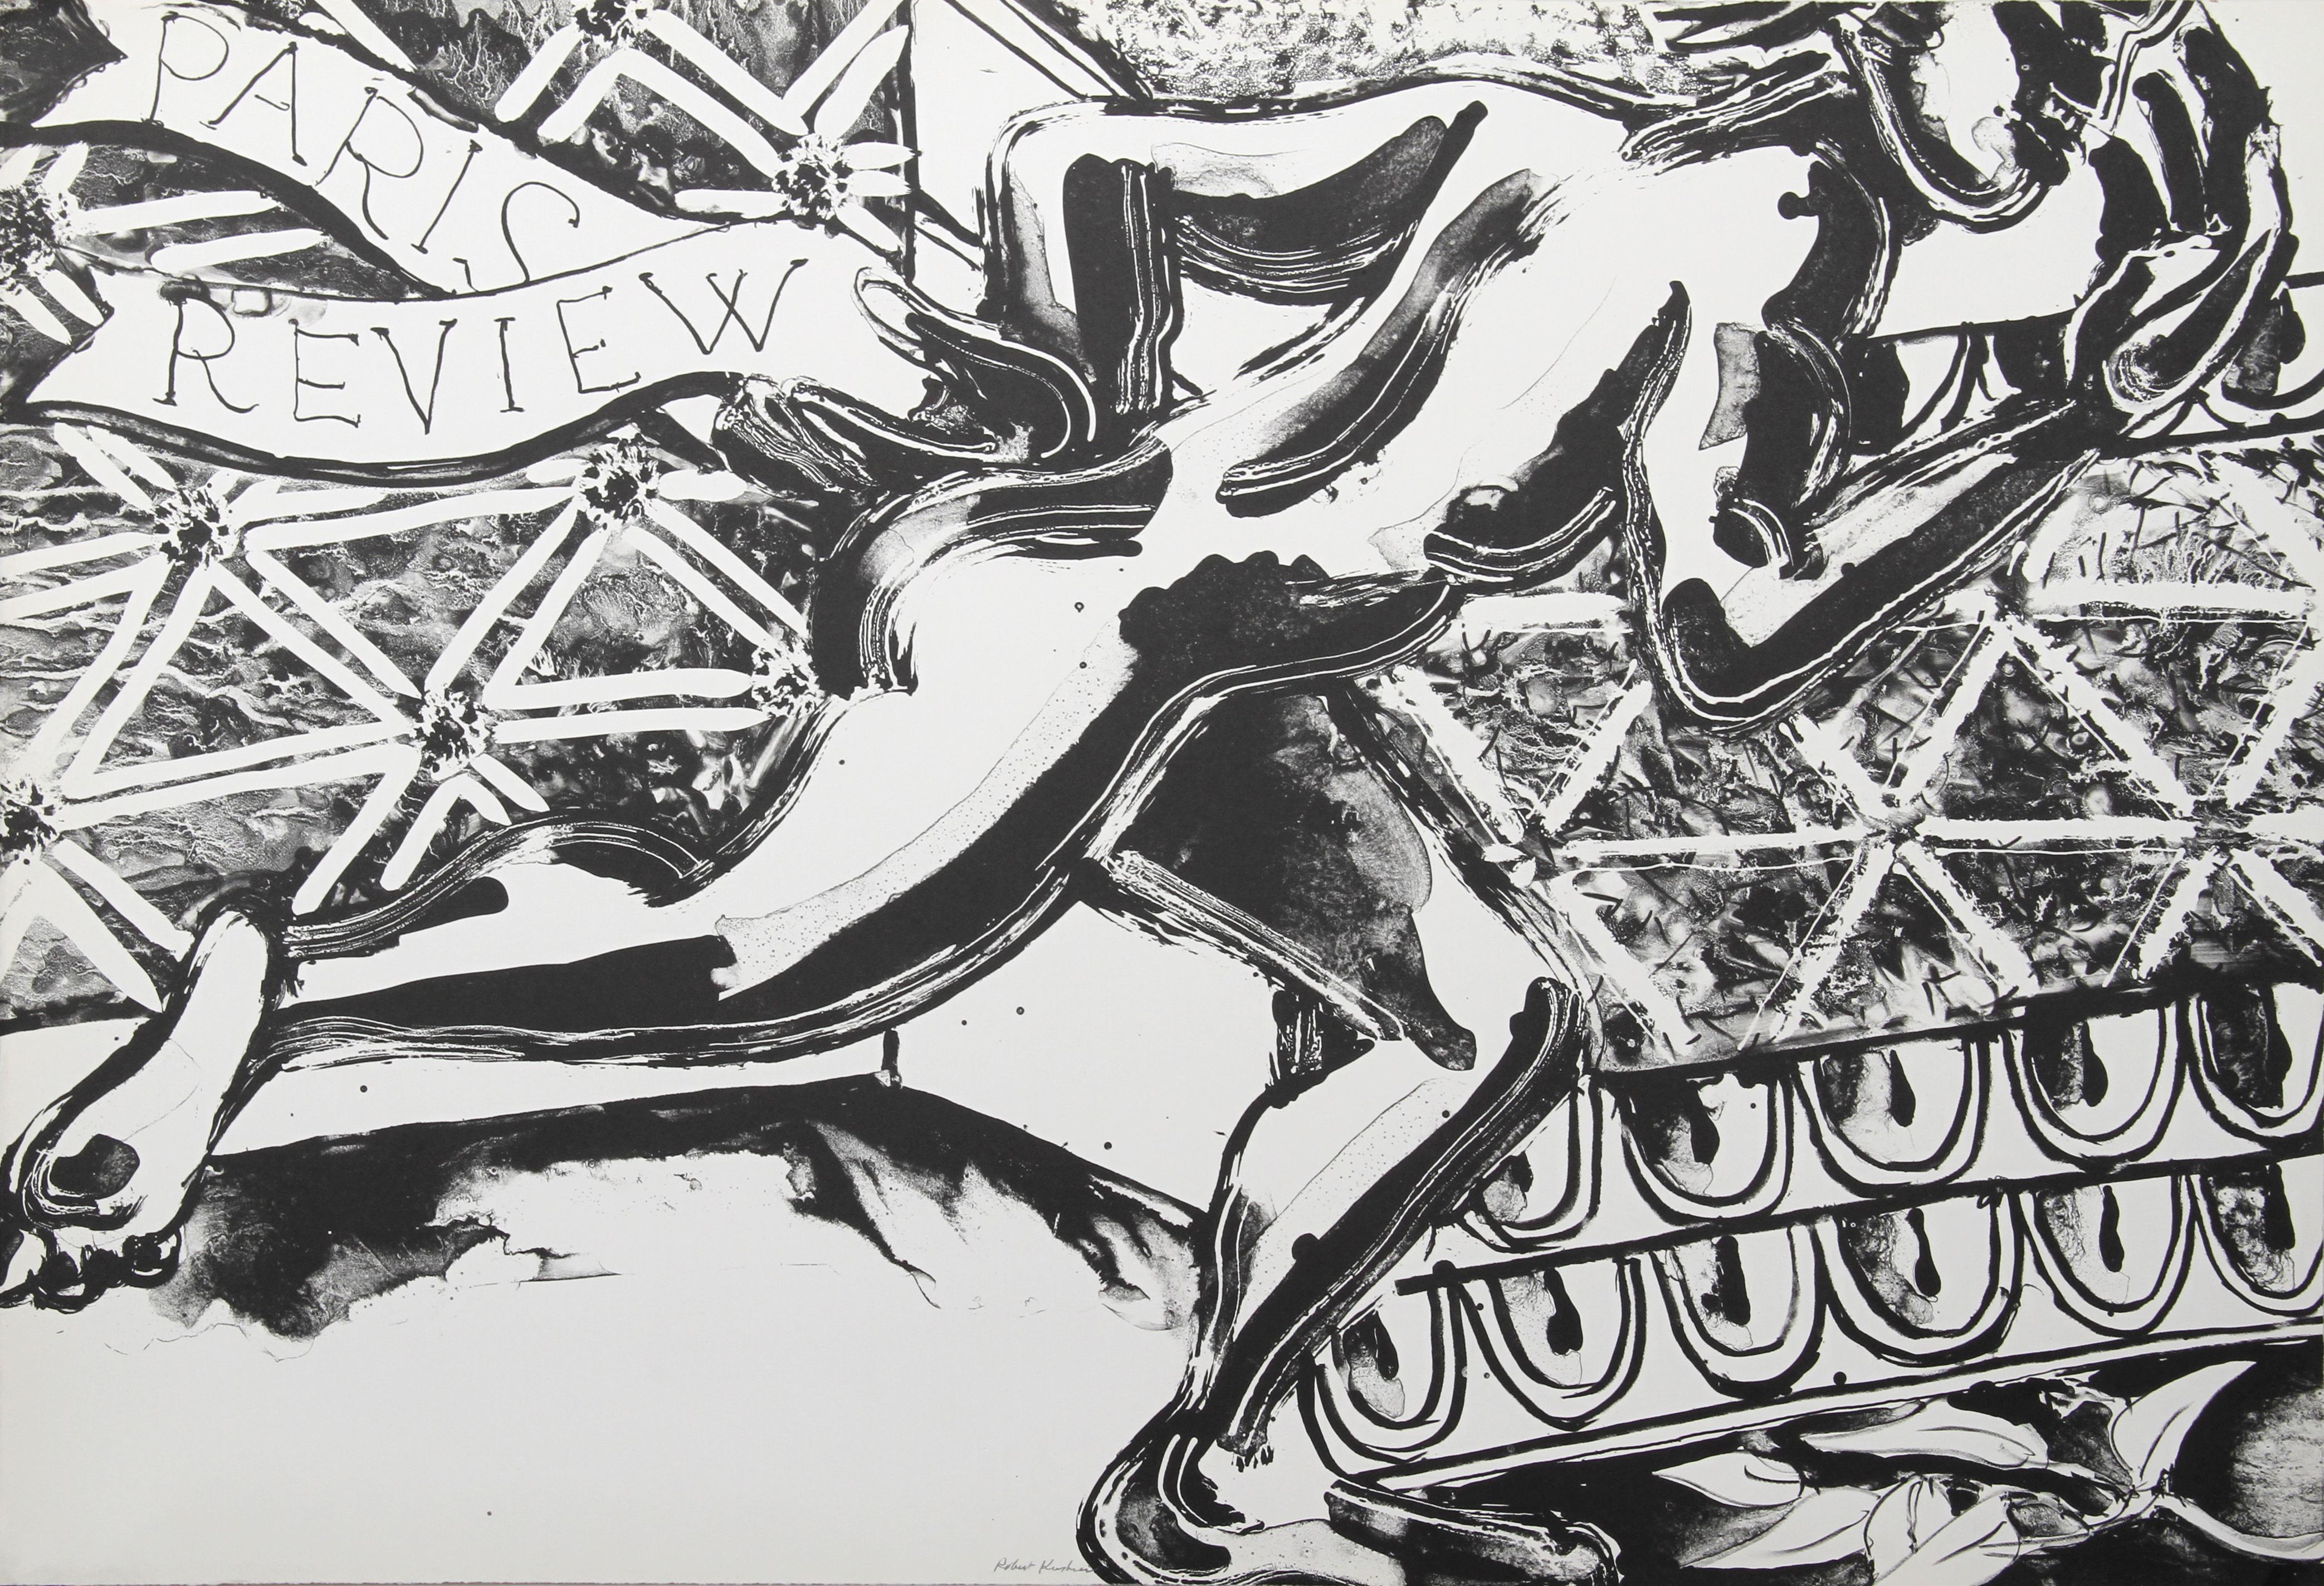 Artiste : Robert Kushner, américain (1949 - )
Titre : Revue de Paris
Année : 1982 
Médium : Lithographie, signée et numérotée au crayon
Edition : 200
Taille : 30 in. x 44 in. (76,2 cm x 111,76 cm)